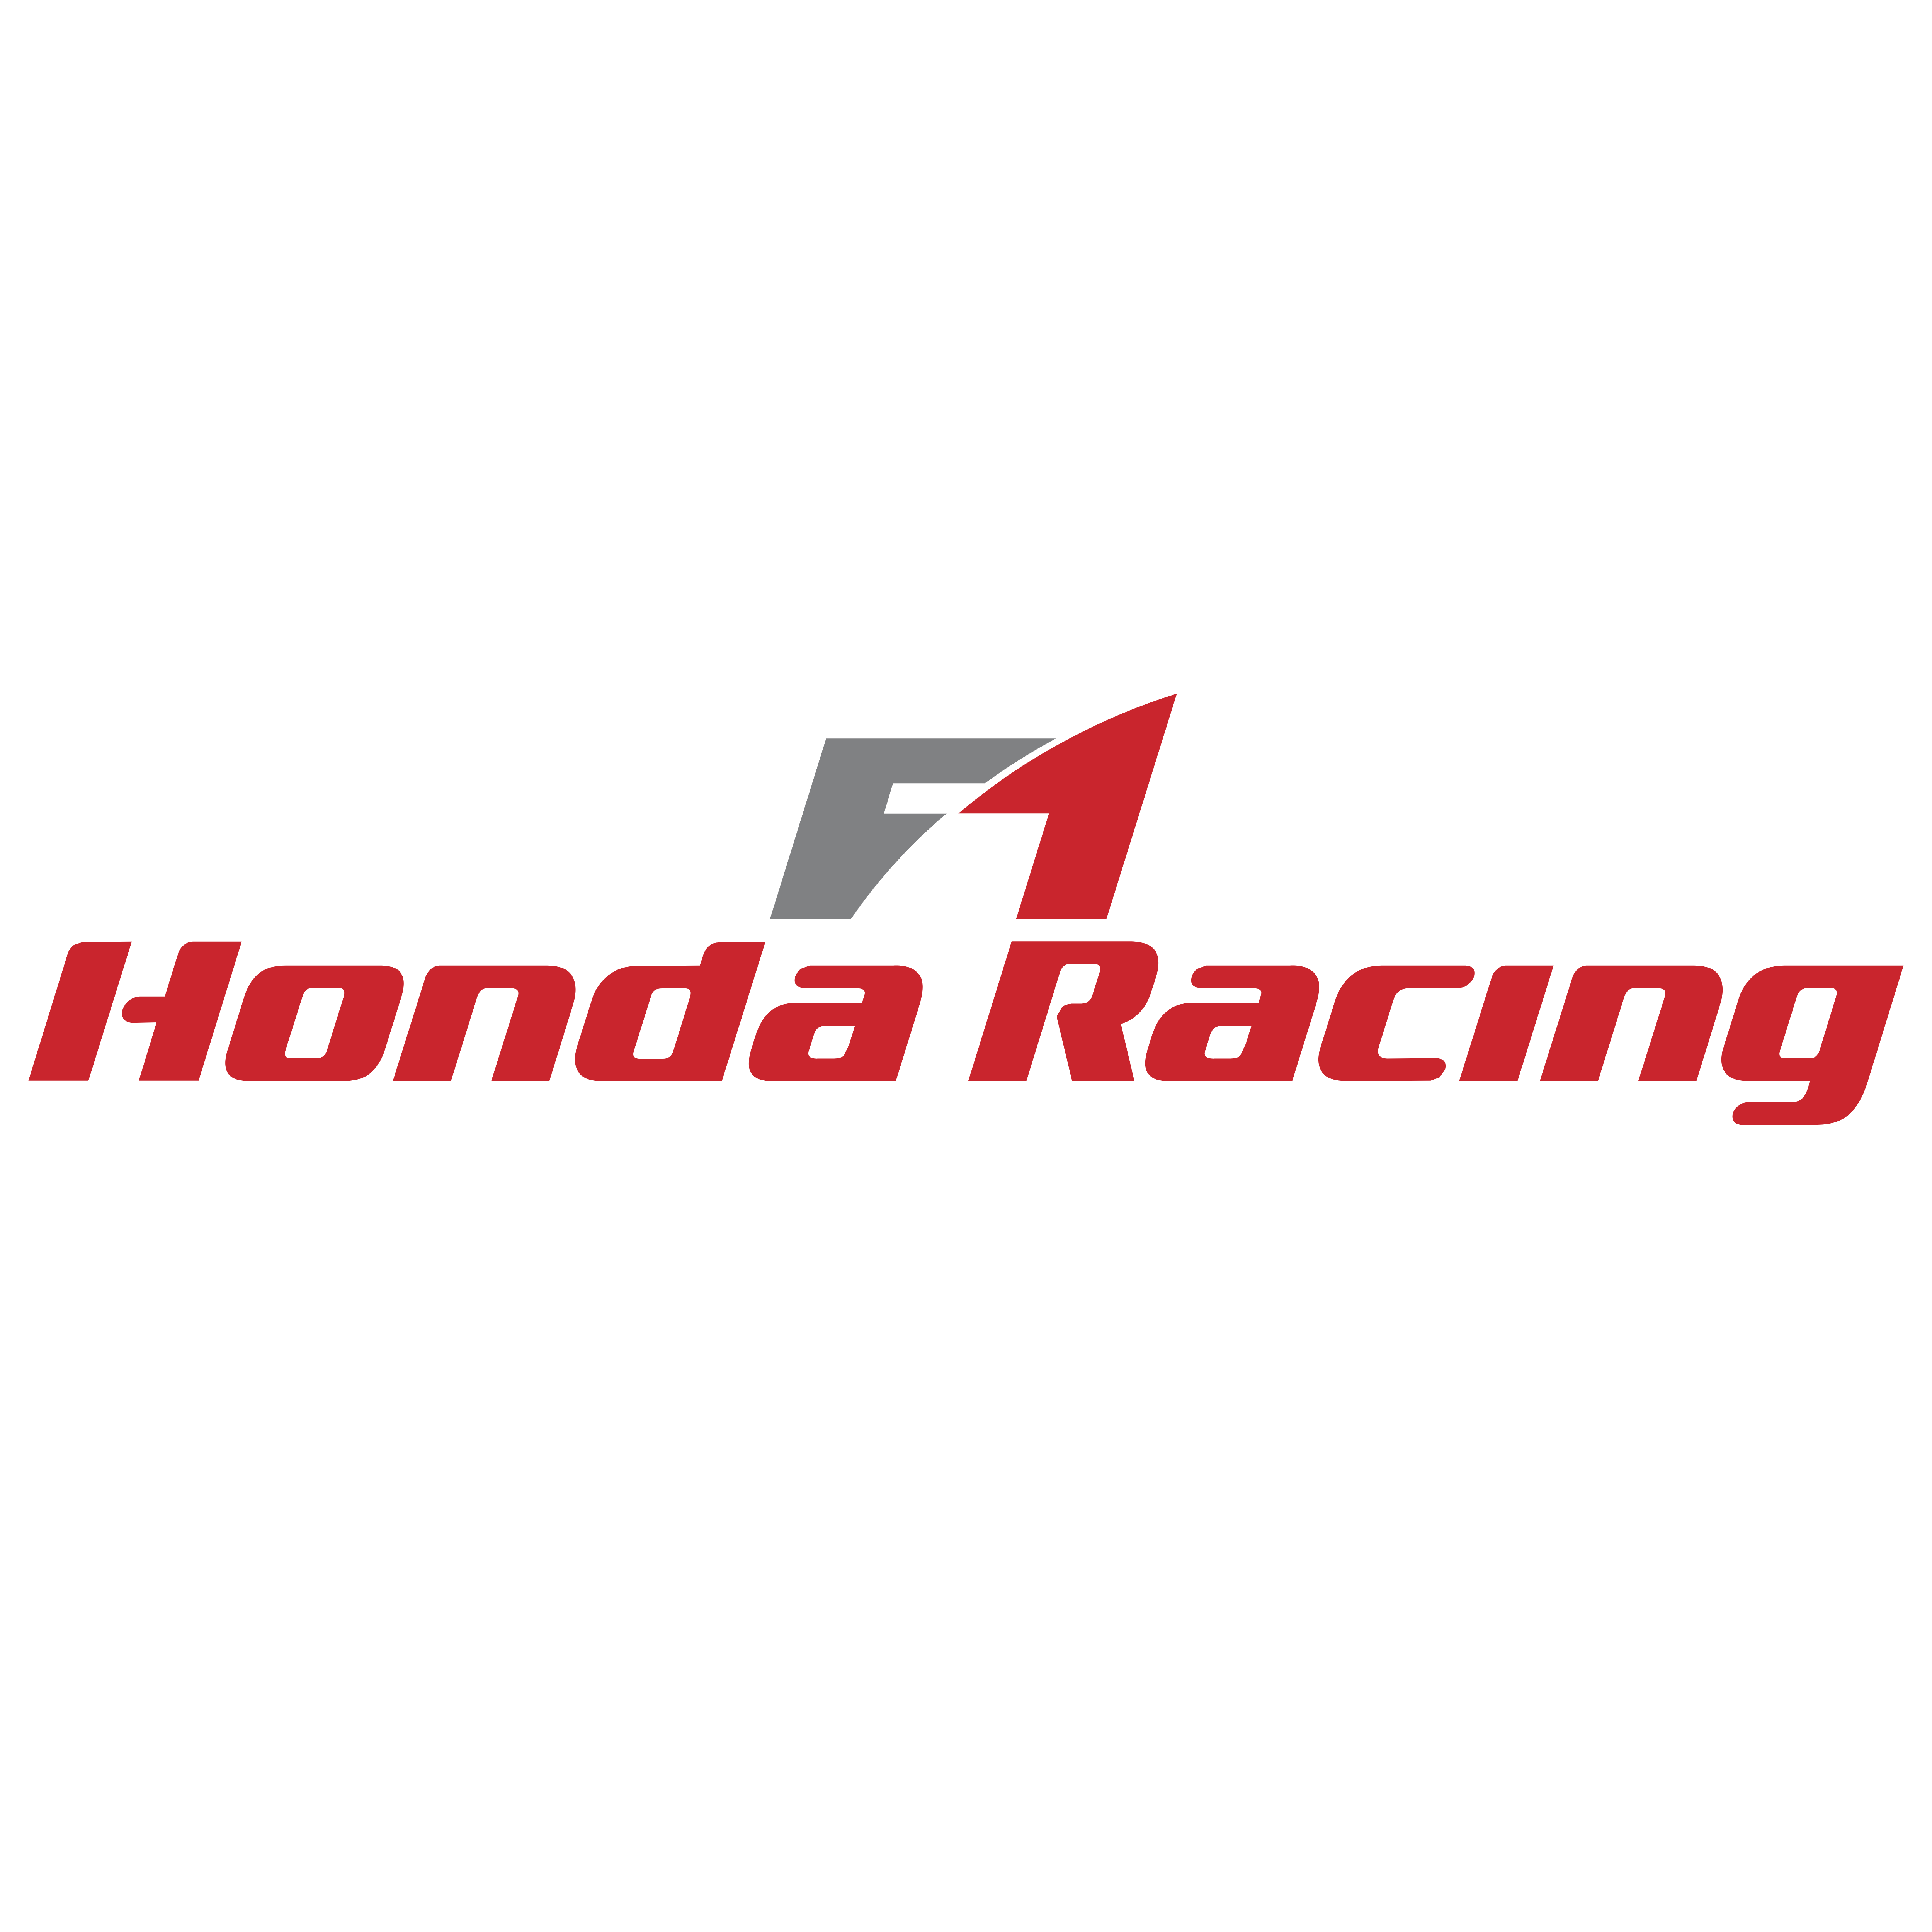  Honda  Logos  Download